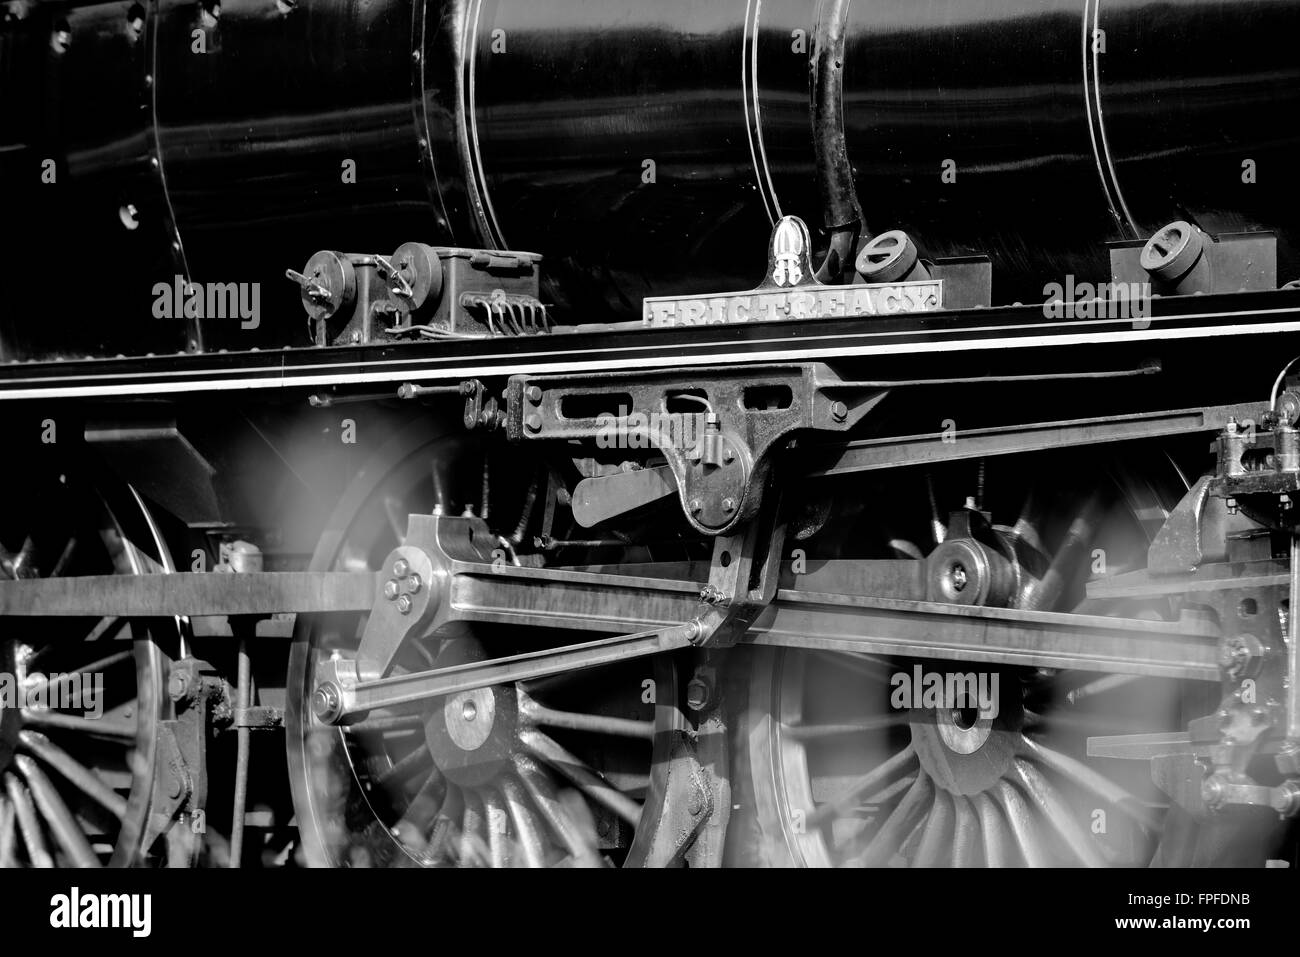 Un train à vapeur de travail noir Banque D'Images